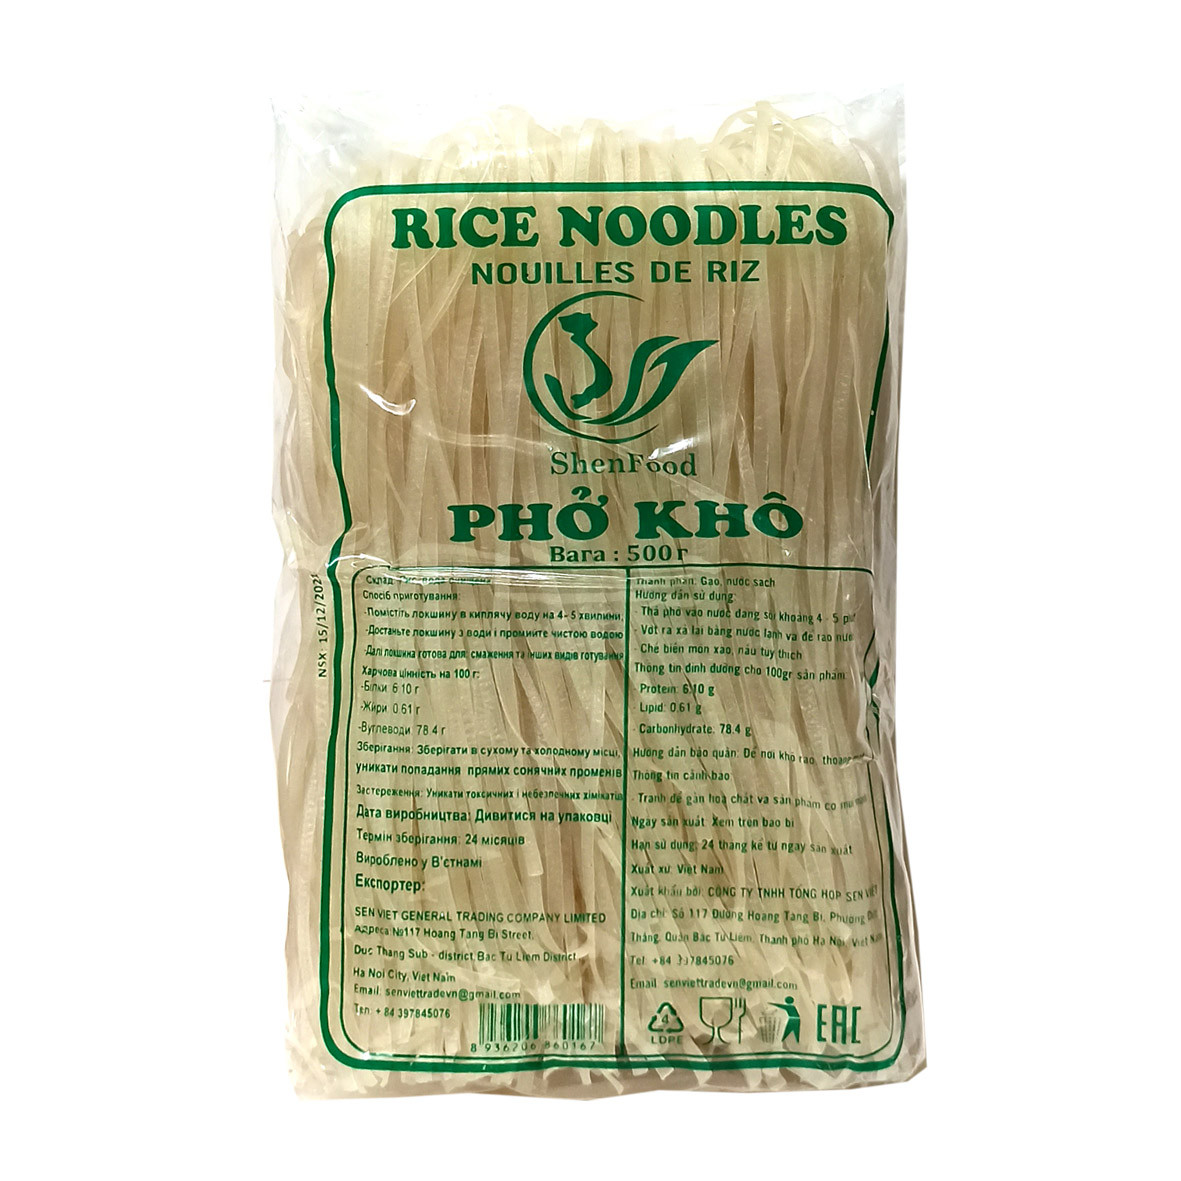 Рисова локшина 0,5 кг. В'єтнам